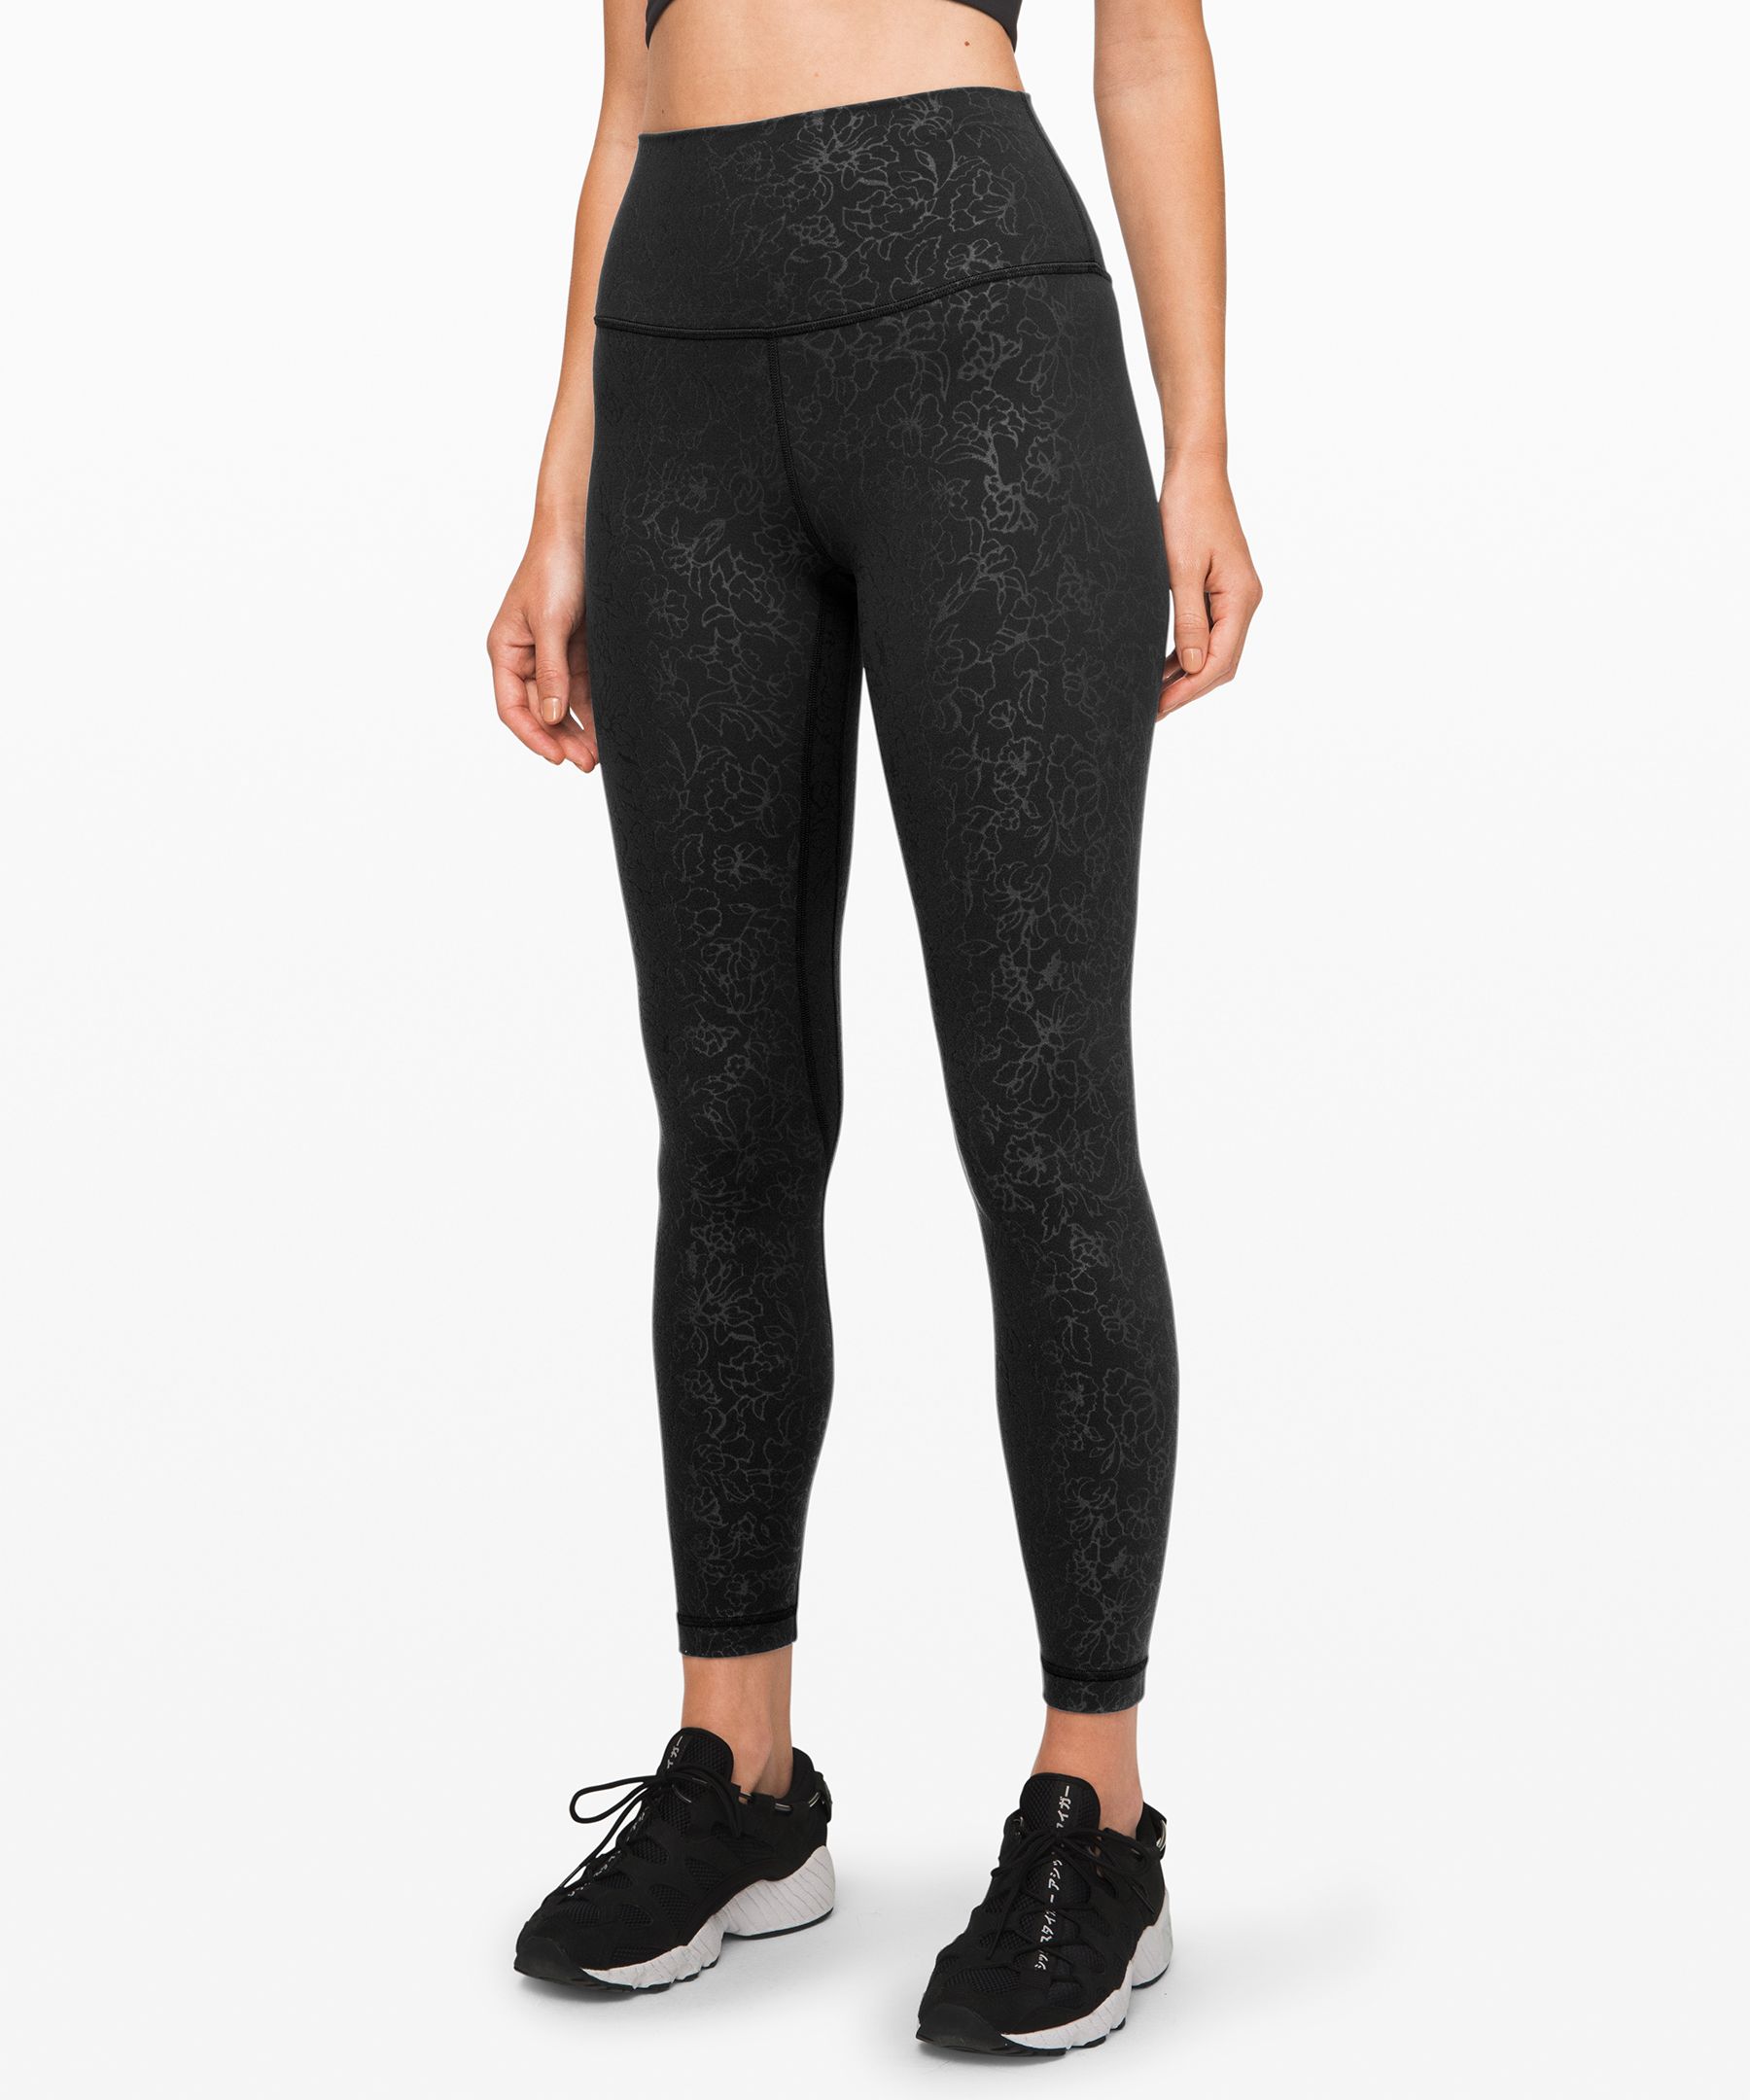 Lululemon Align Pant 25” Emboss Black  Neon leggings, Lululemon align  pant, Black patterned leggings